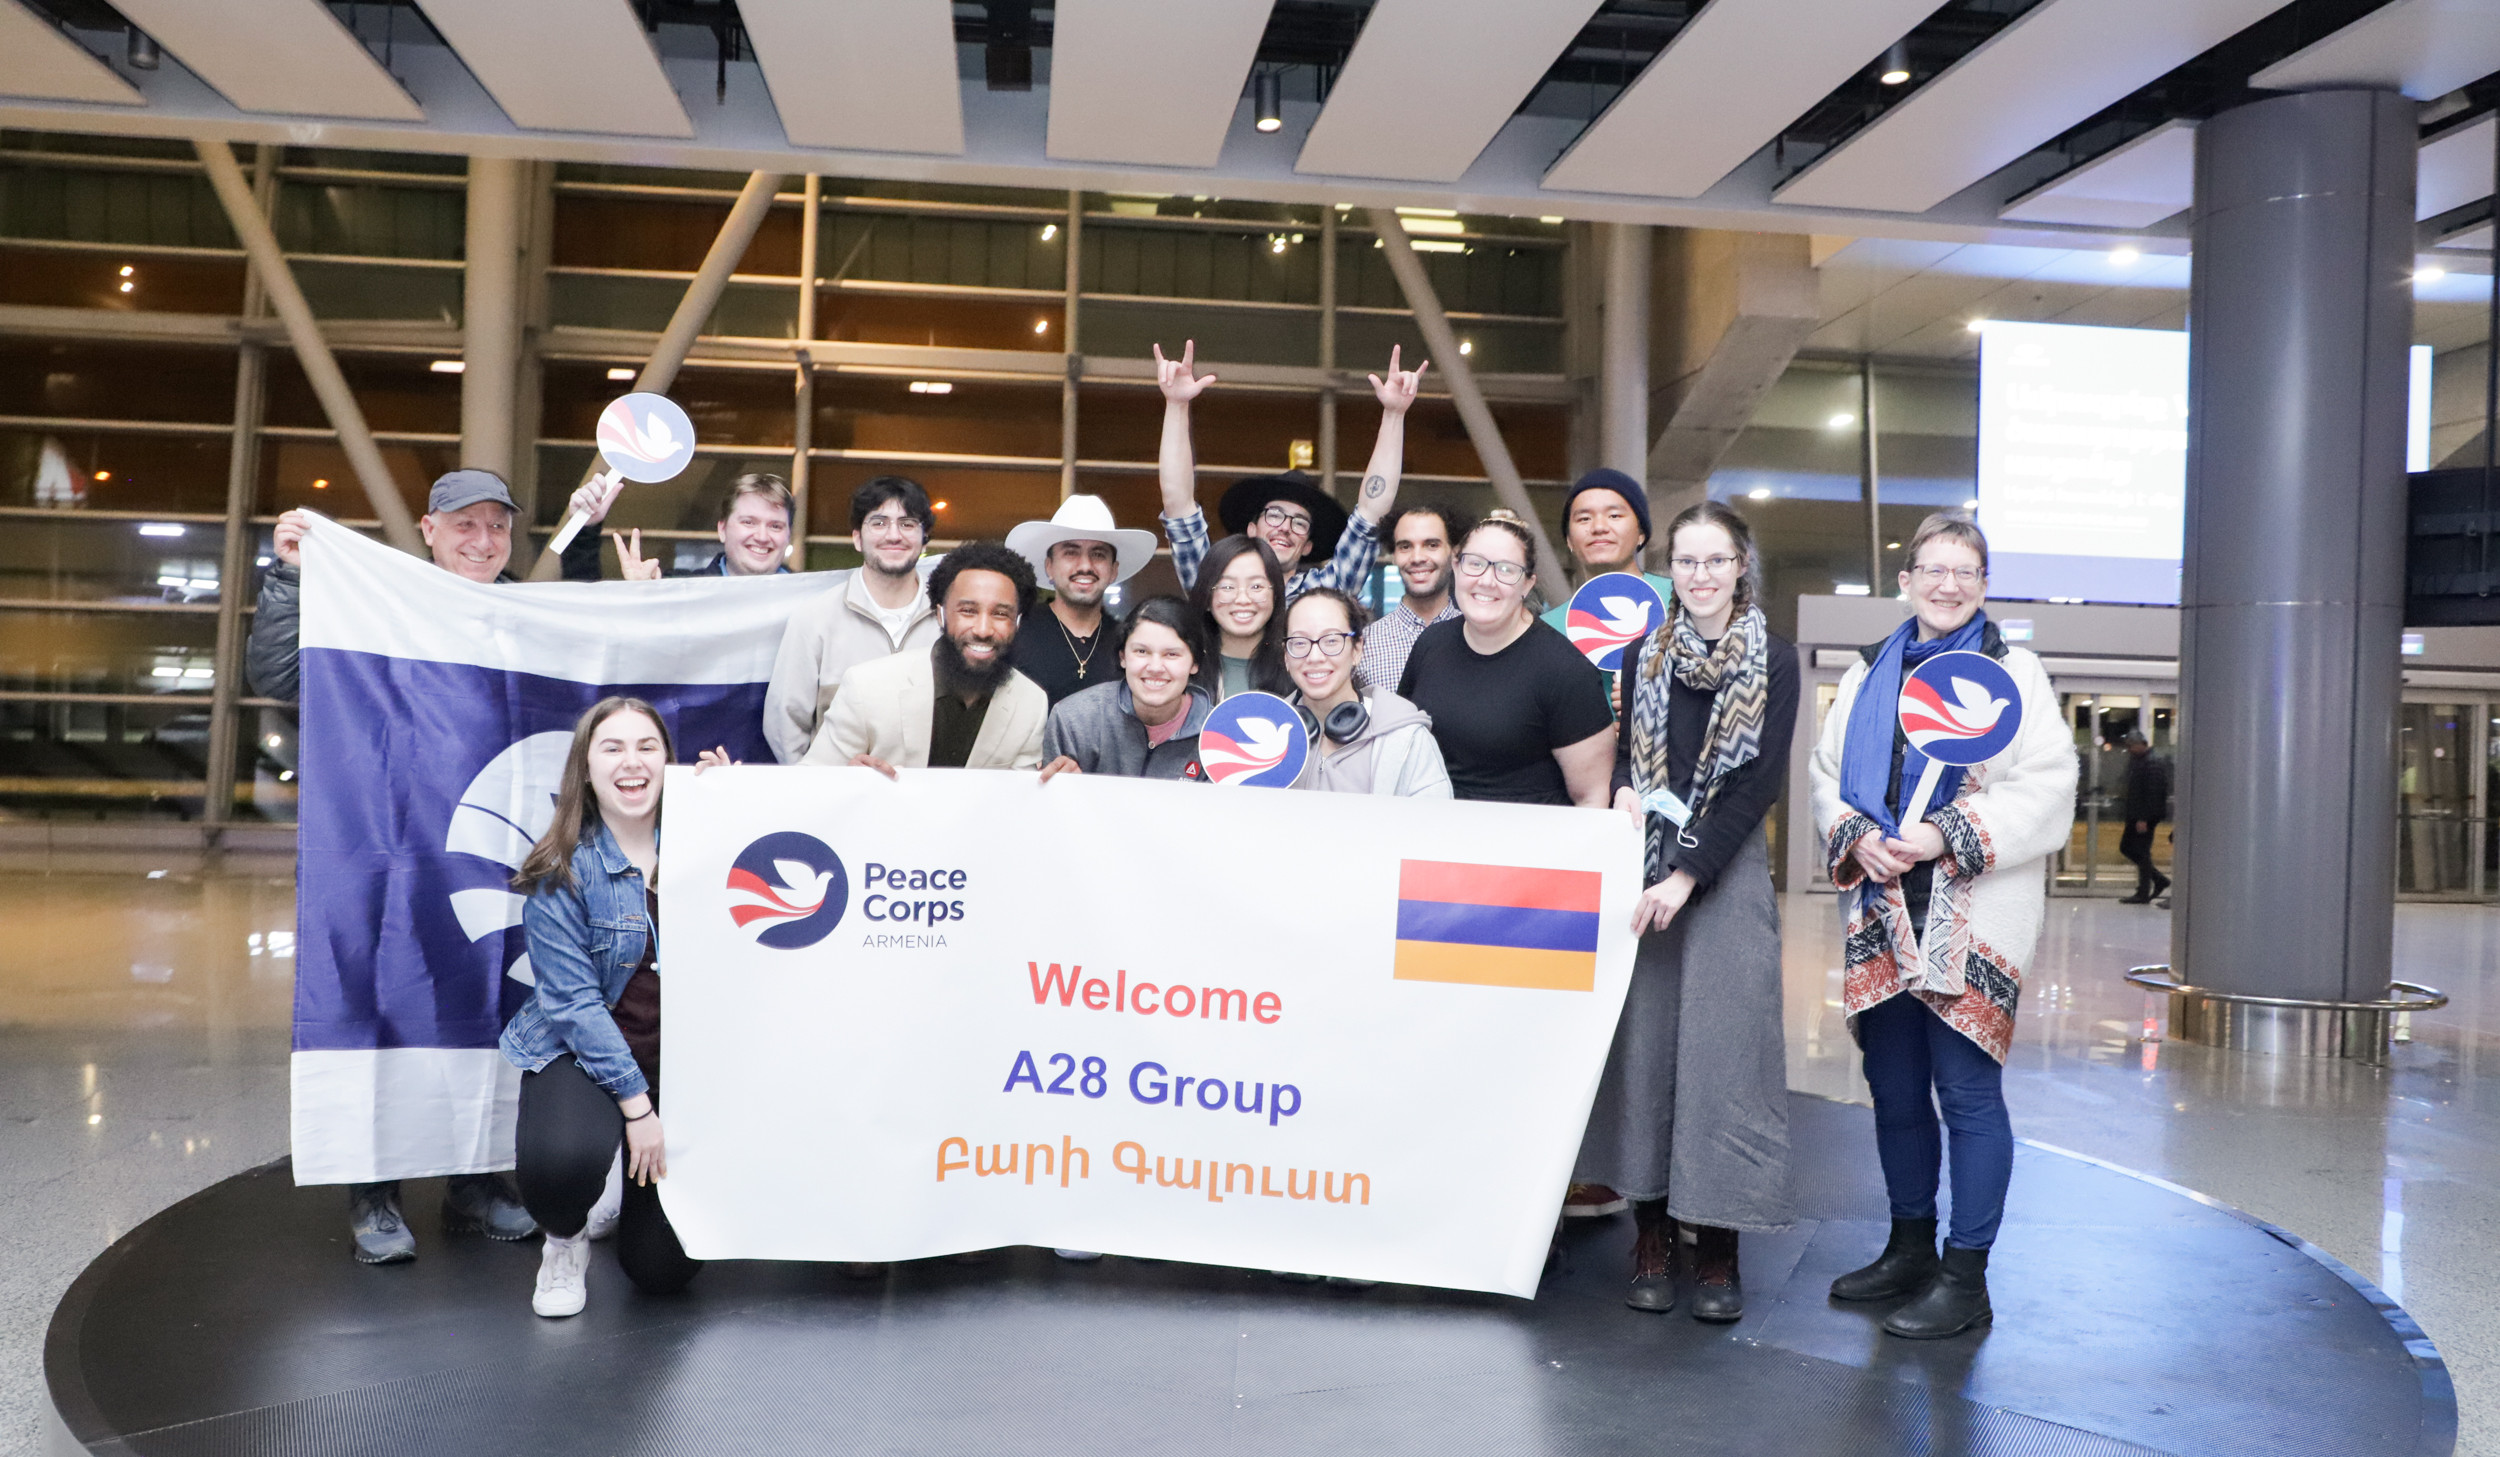 ԱՄՆ Խաղաղության կորպուսի կամավորները վերադառնում են Հայաստան